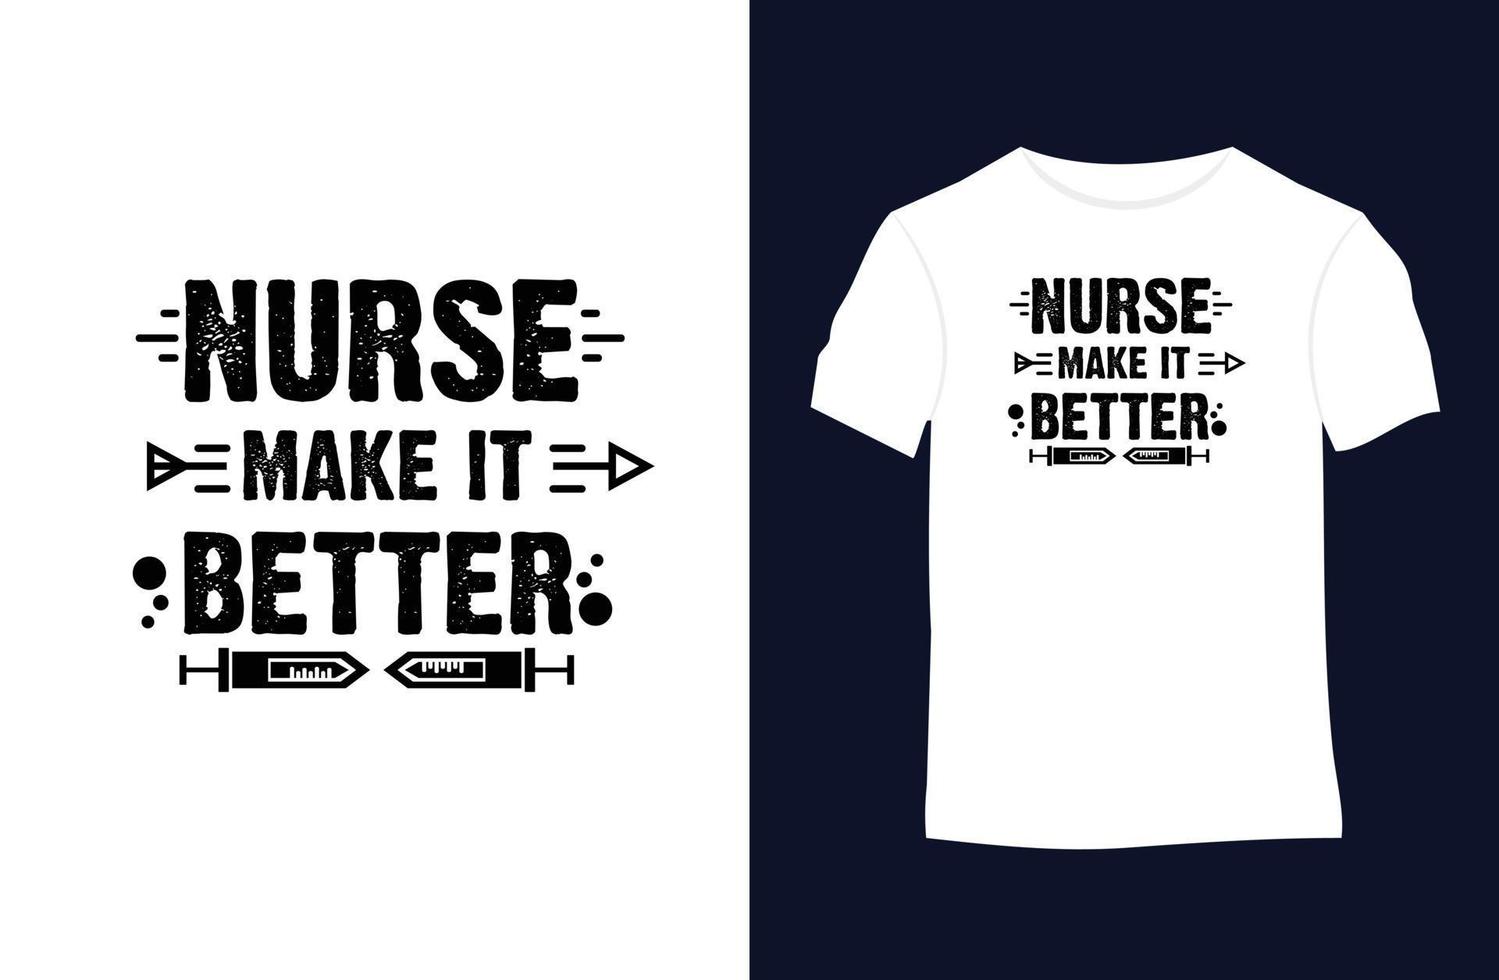 infirmière disant et citant la conception de t-shirt vectoriel. vecteur